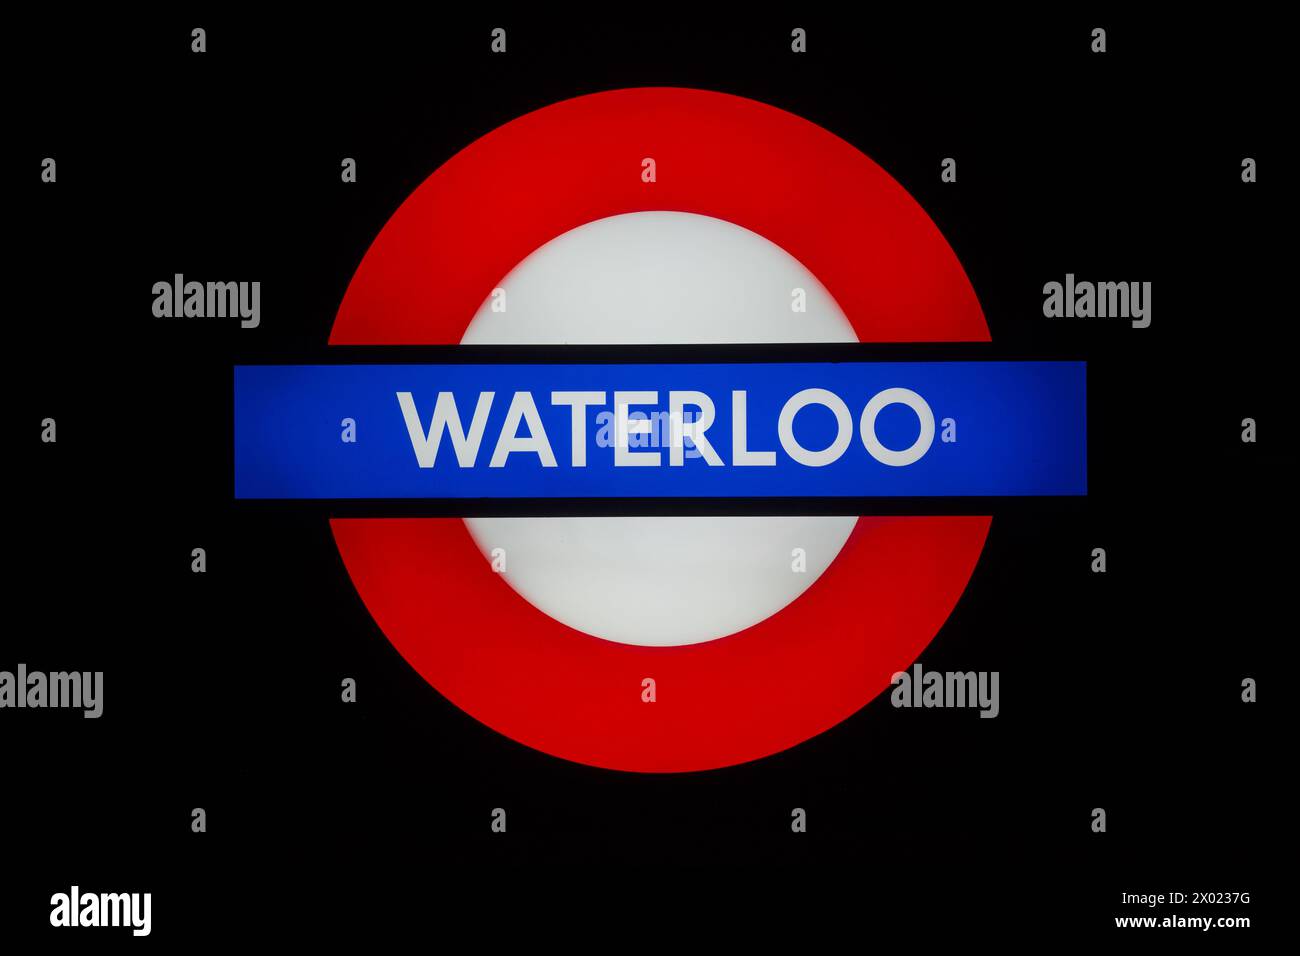 Illuminated Waterloo tube sign Stock Photo